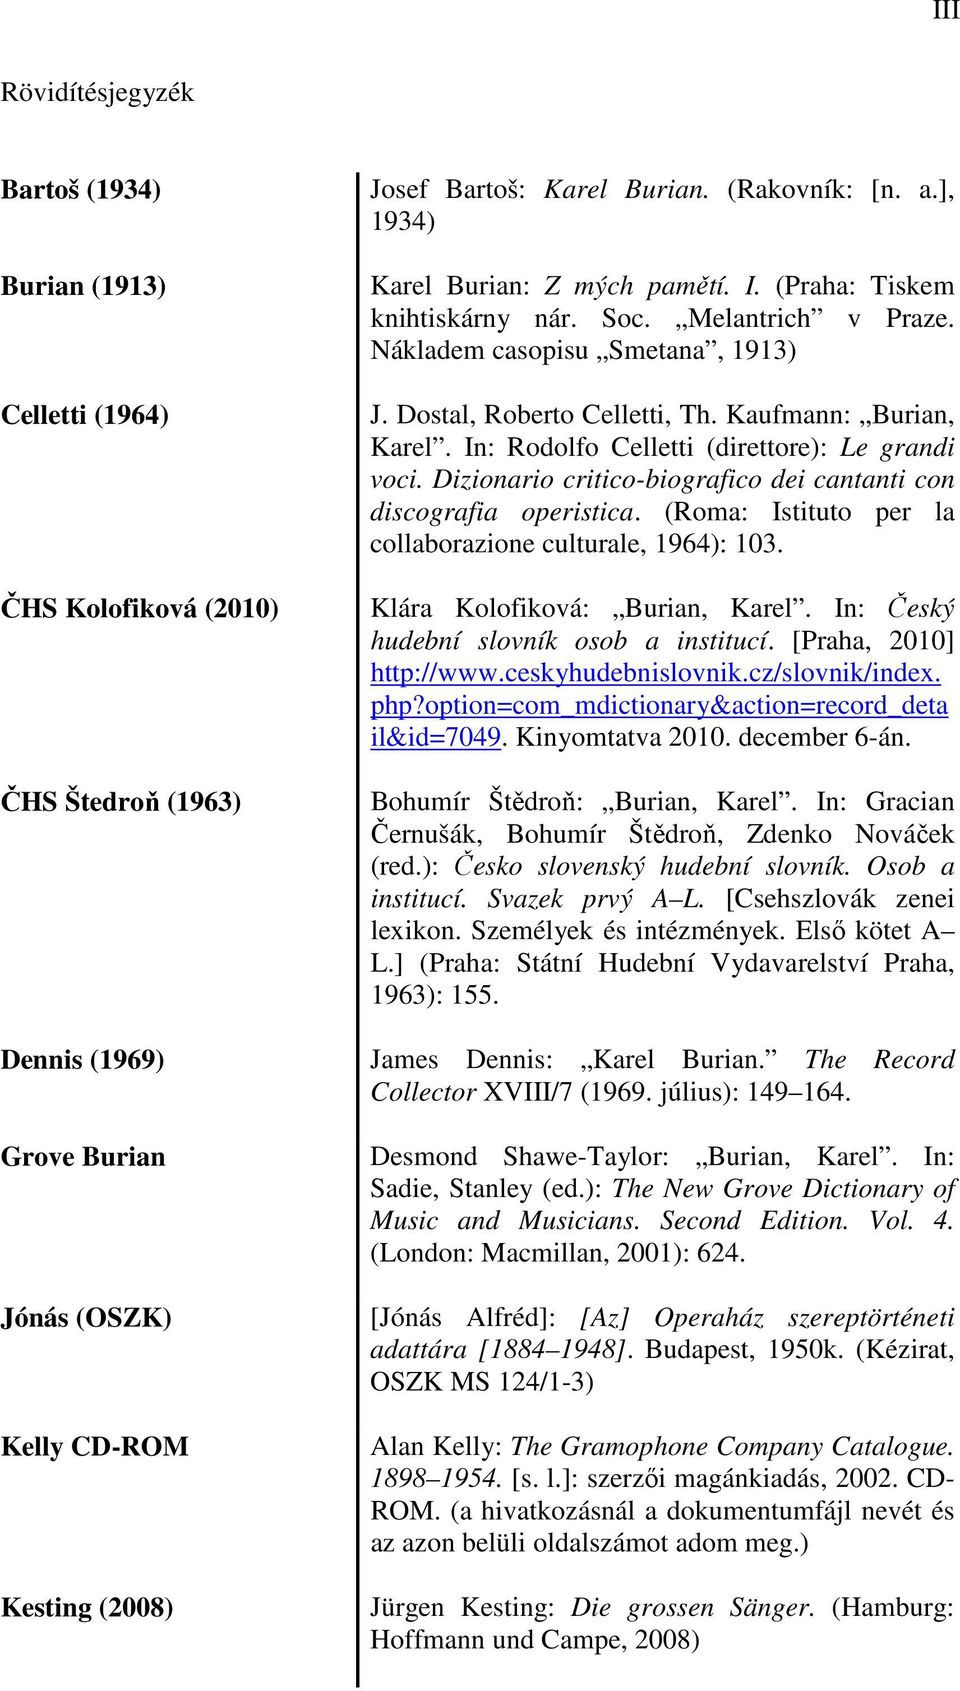 Kaufmann: Burian, Karel. In: Rodolfo Celletti (direttore): Le grandi voci. Dizionario critico-biografico dei cantanti con discografia operistica.